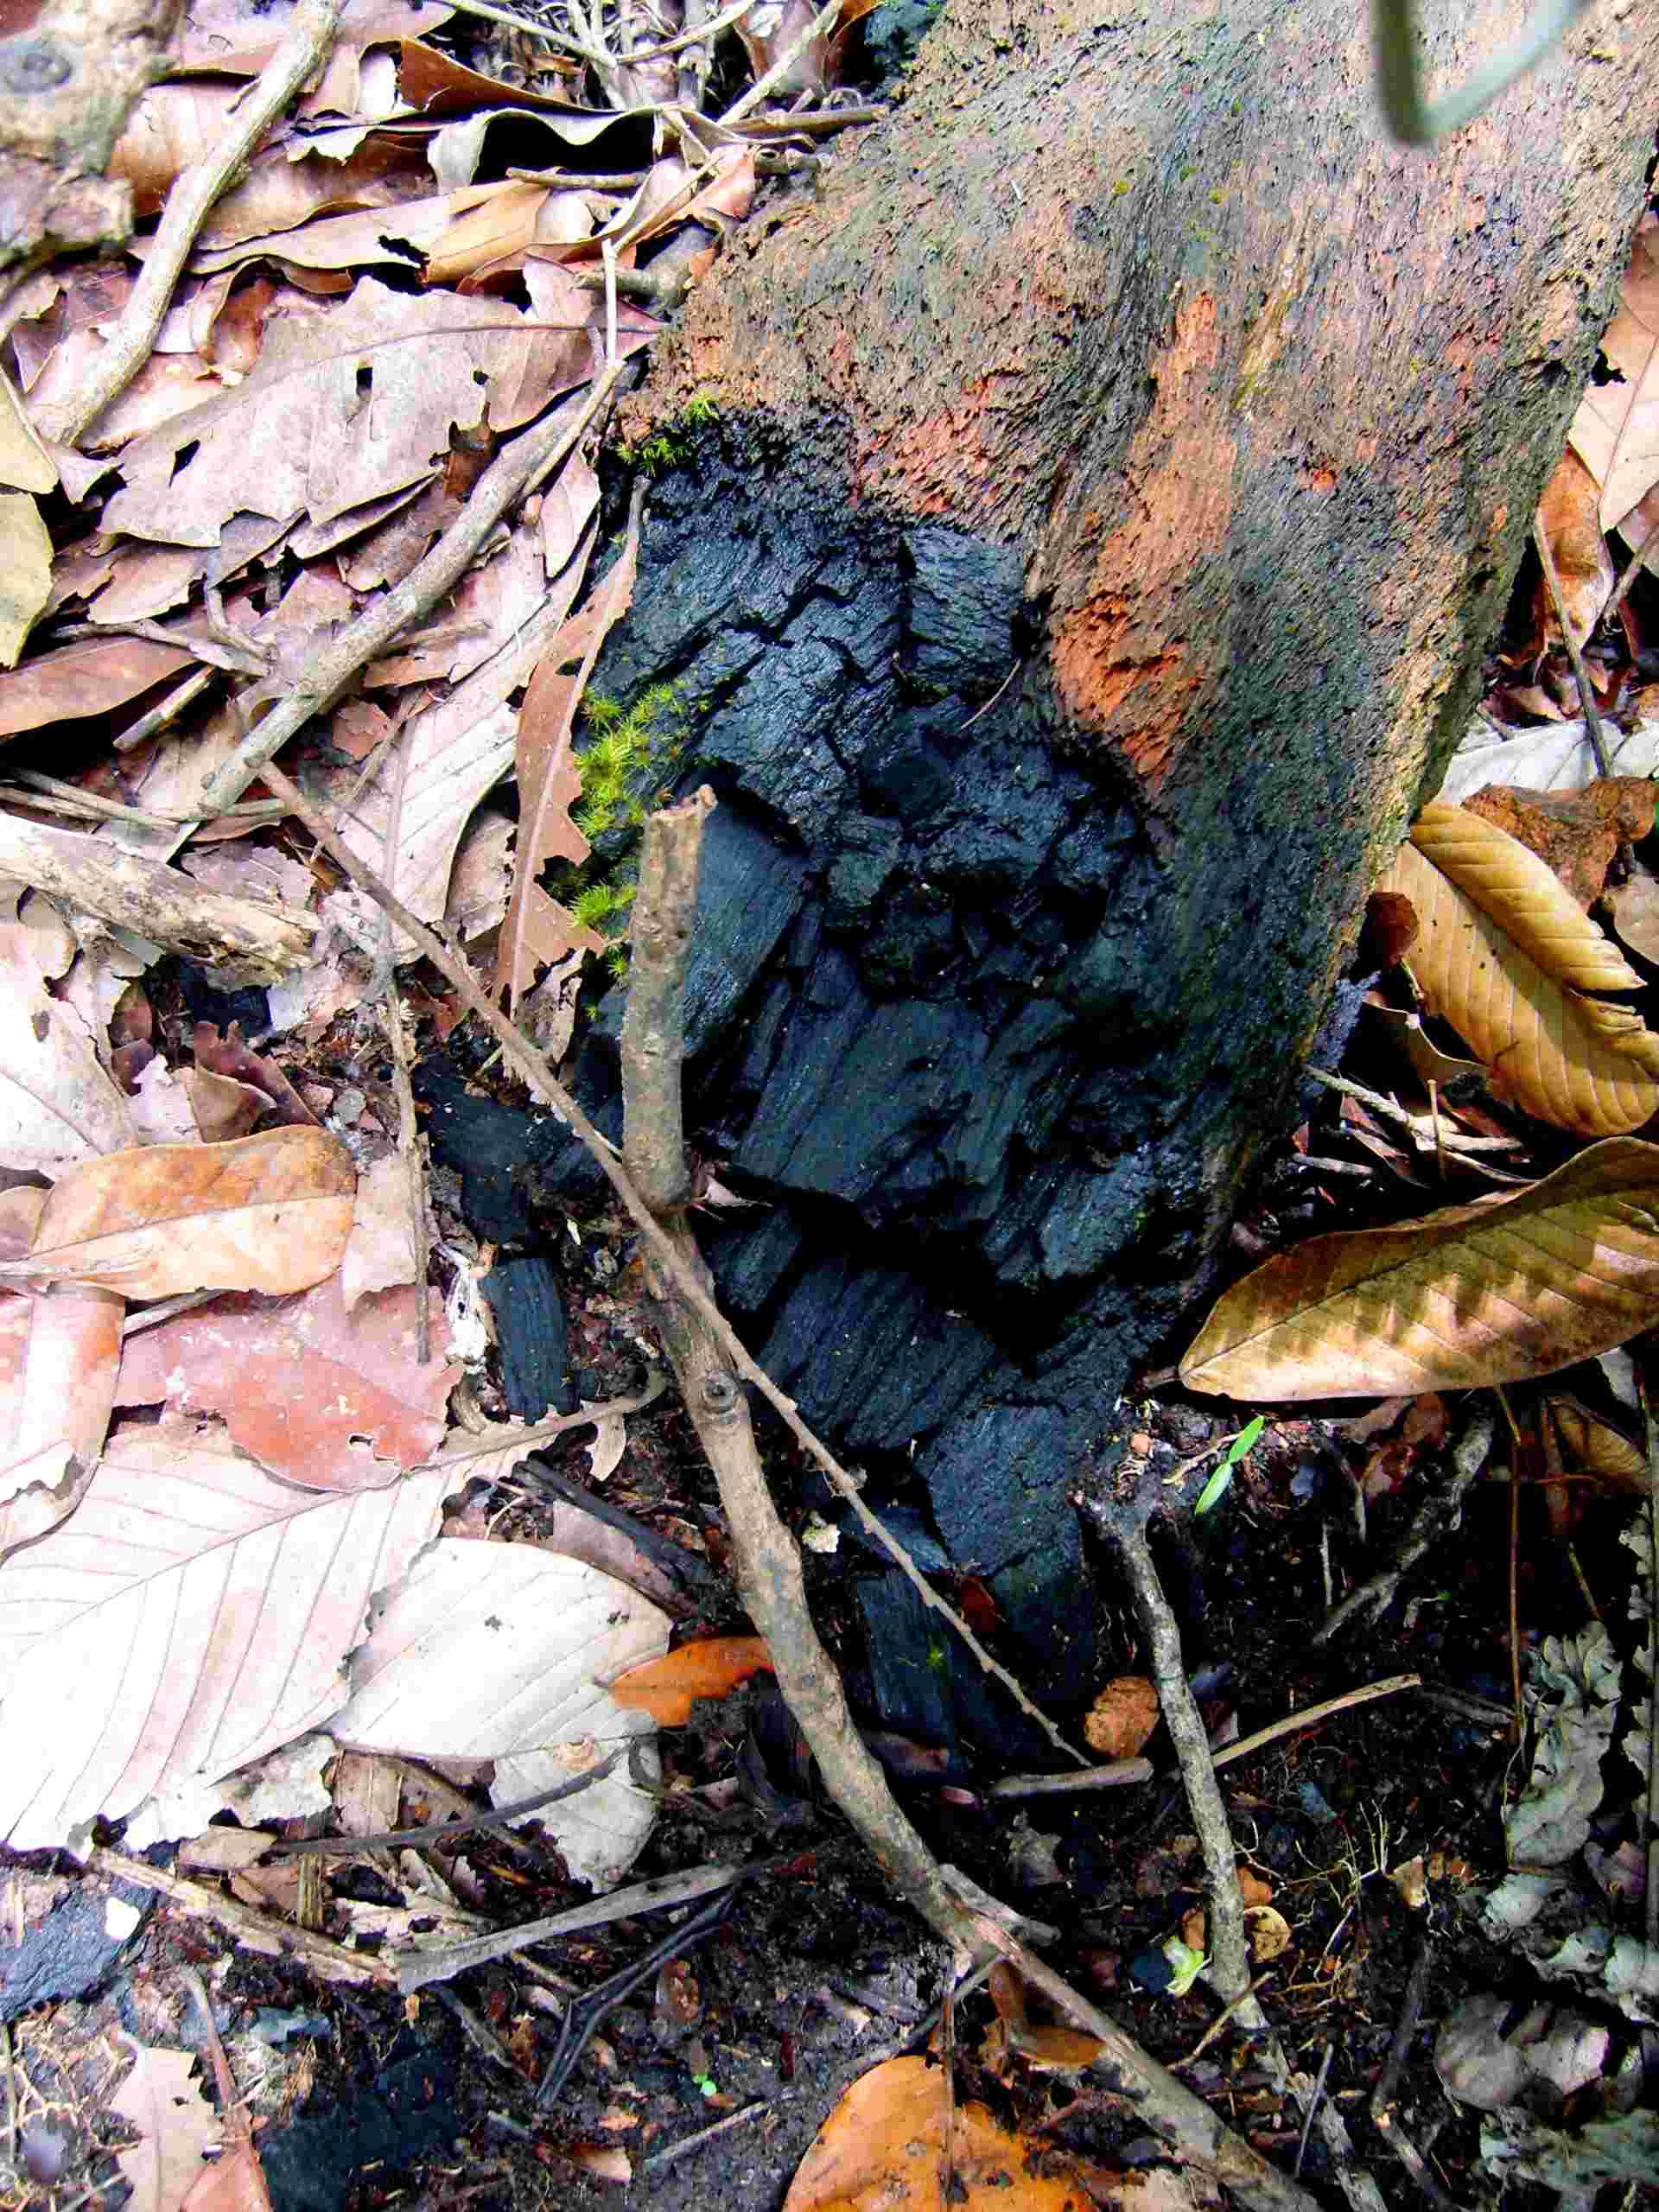  Árvore morta por fogo no subbosque: uma evidência da entrada de queimadas de fazendas vizinhas nas bordas floresta amazônica no Mato Grosso ( foto: Luiz Aragão)  